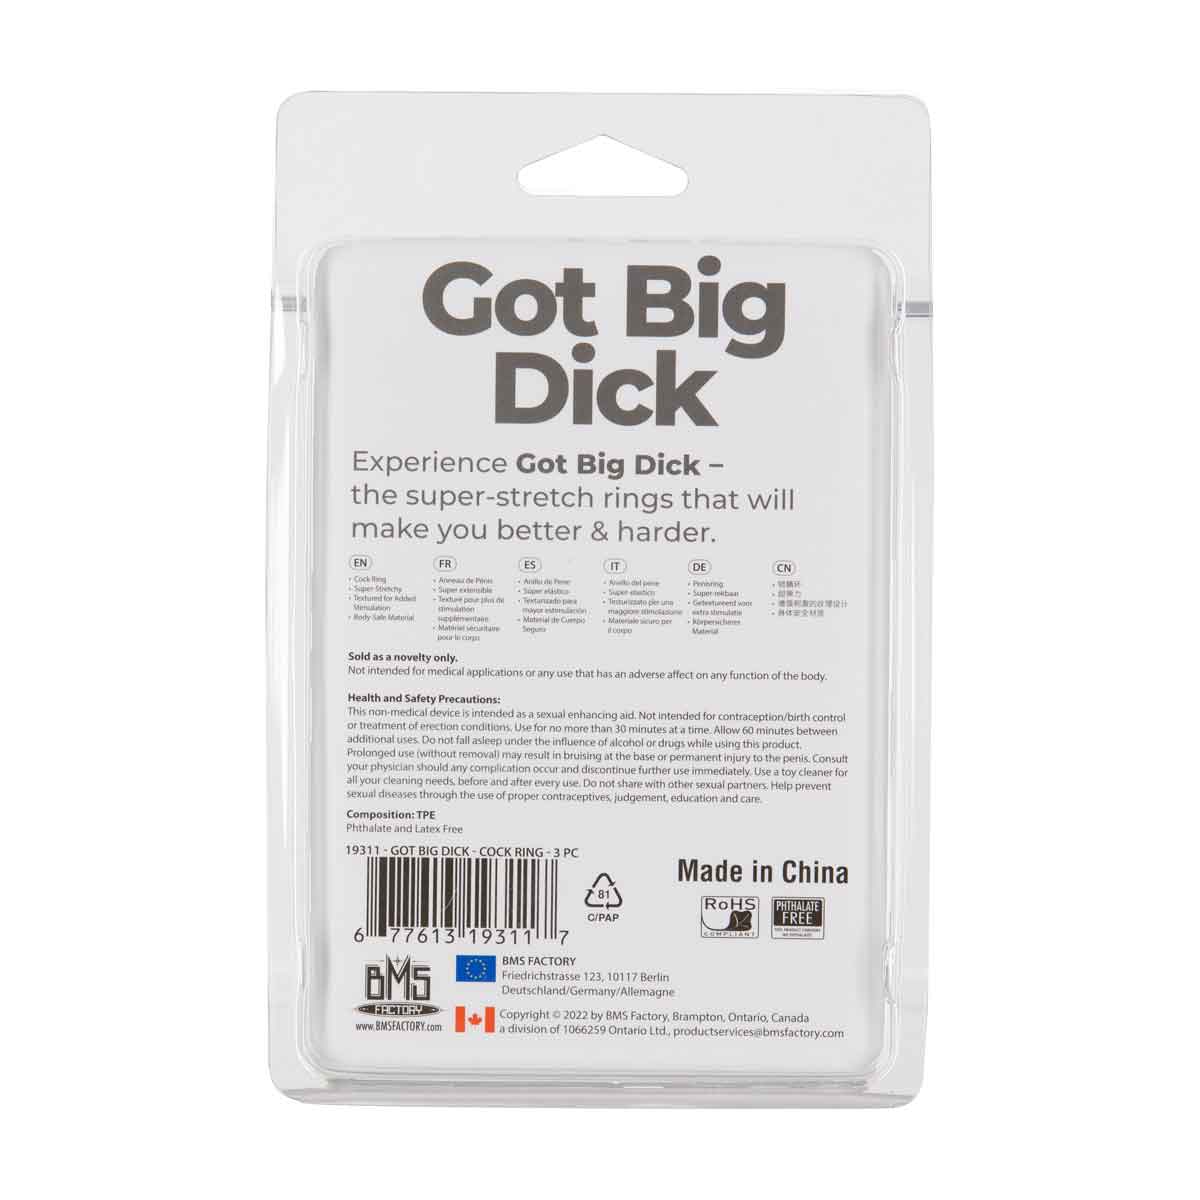 Got Big Dick – Super Stretch Cock Rings – Black – 3 Pack